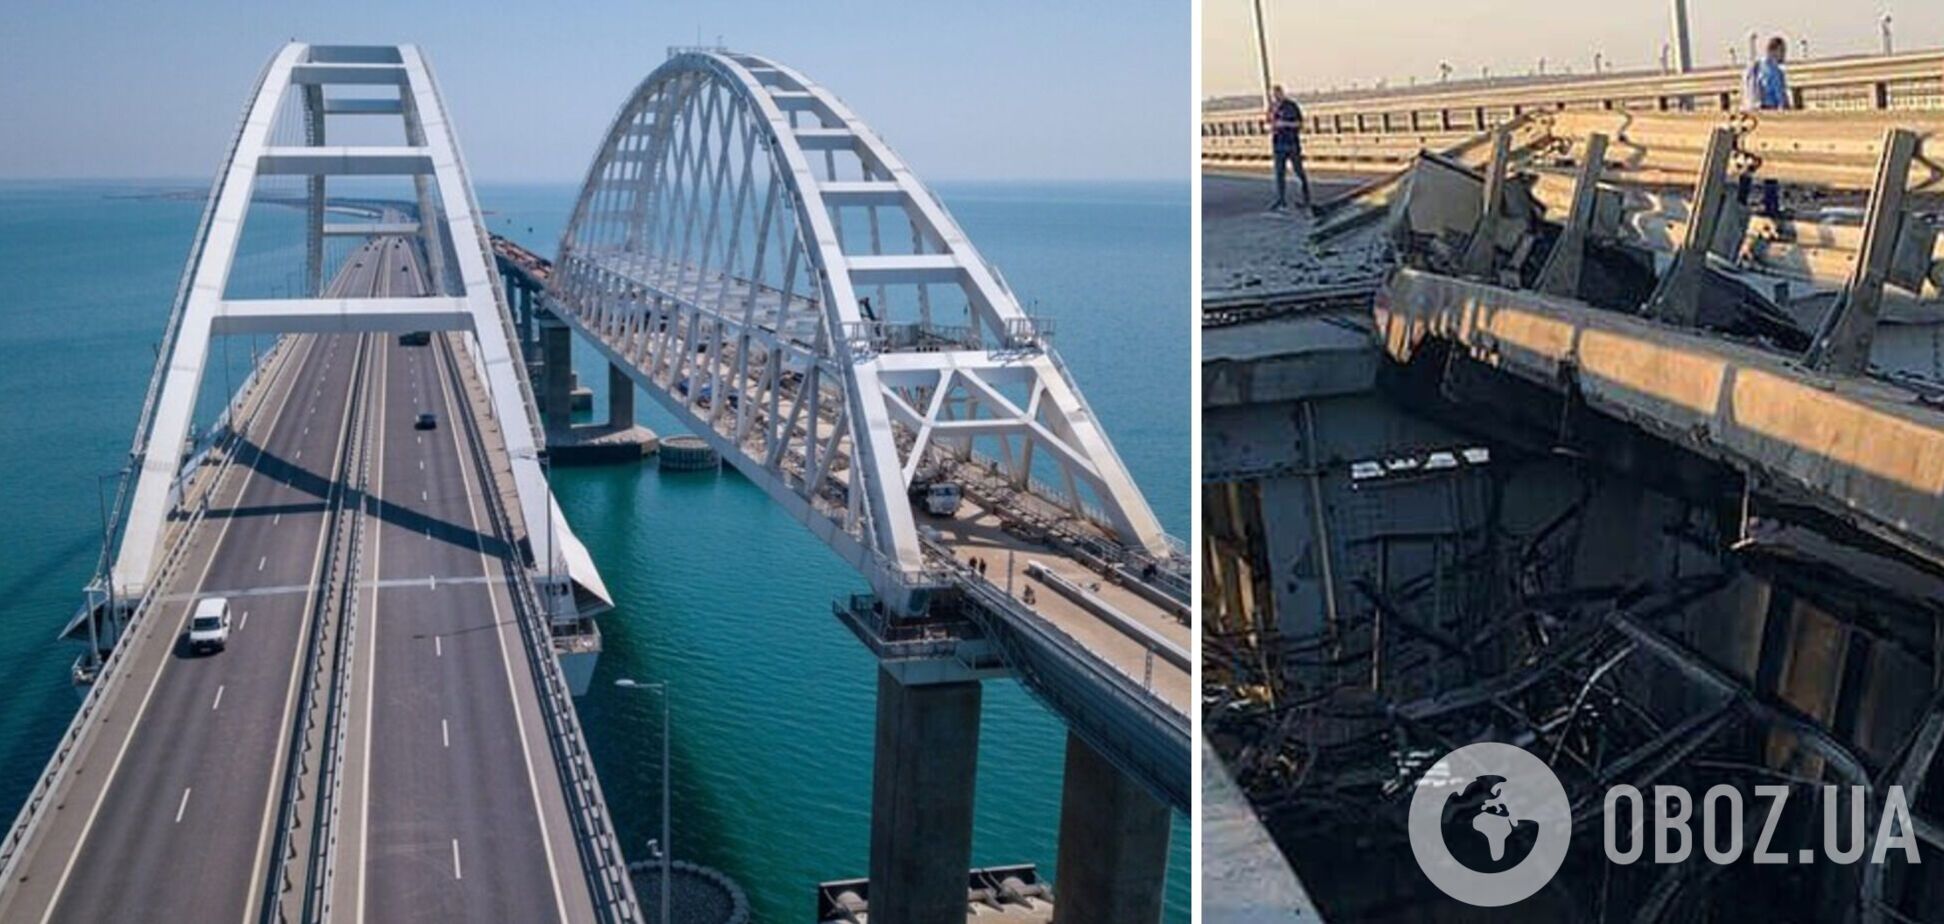 'З цікавістю спостерігаємо': у СБУ прокоментували вибухи на Кримському мосту